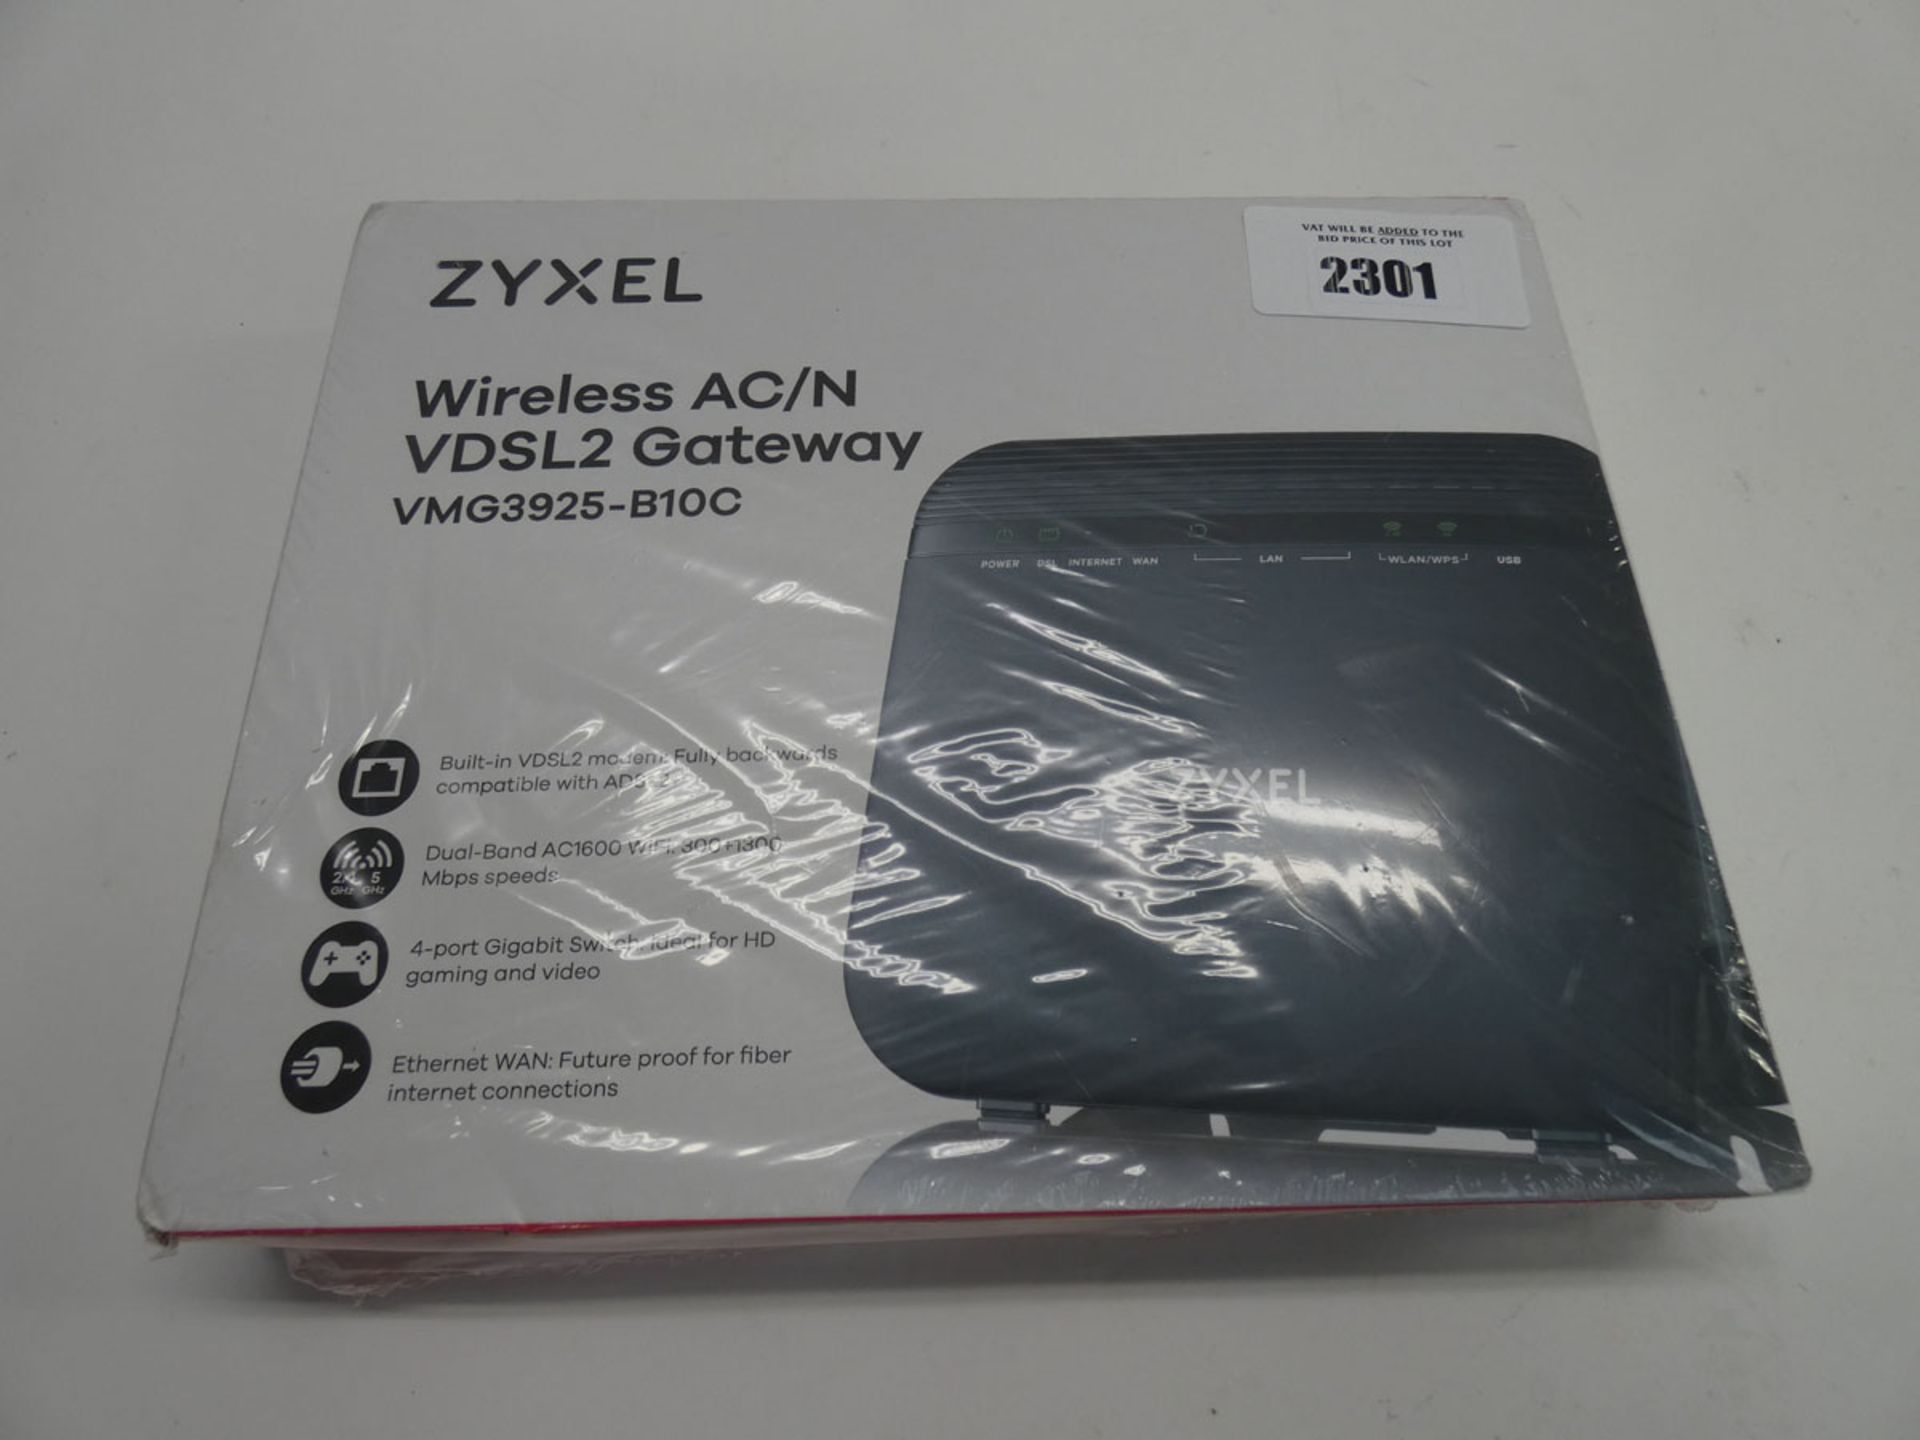 ZYXEL Wireless AC/N gateway